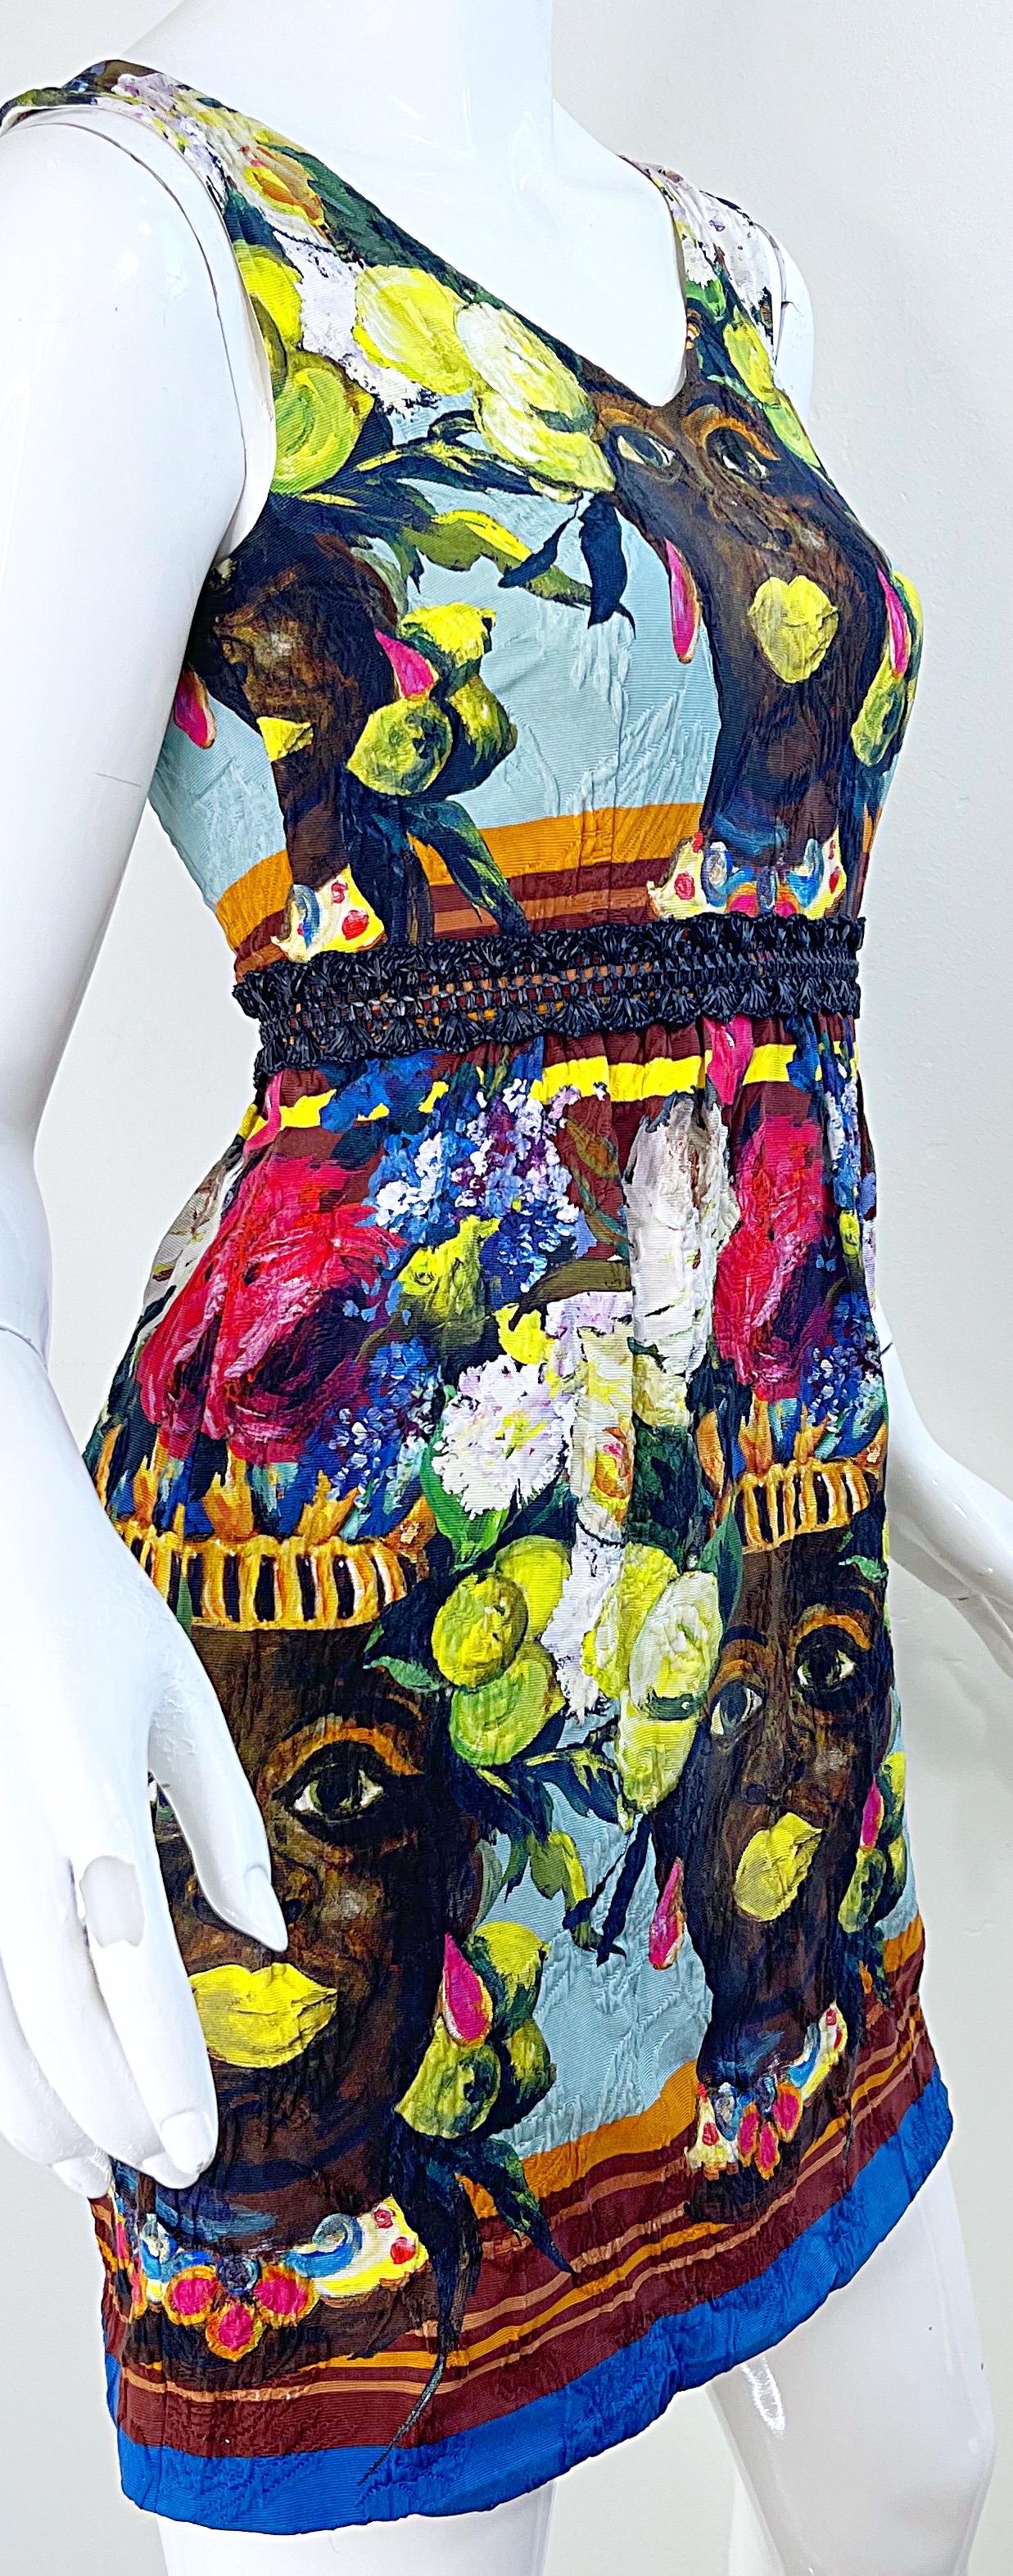 Dolce & Gabbana Spring 2013 Runway Size 36 Moorish Sicilian Testa Di Moro Dress For Sale 11